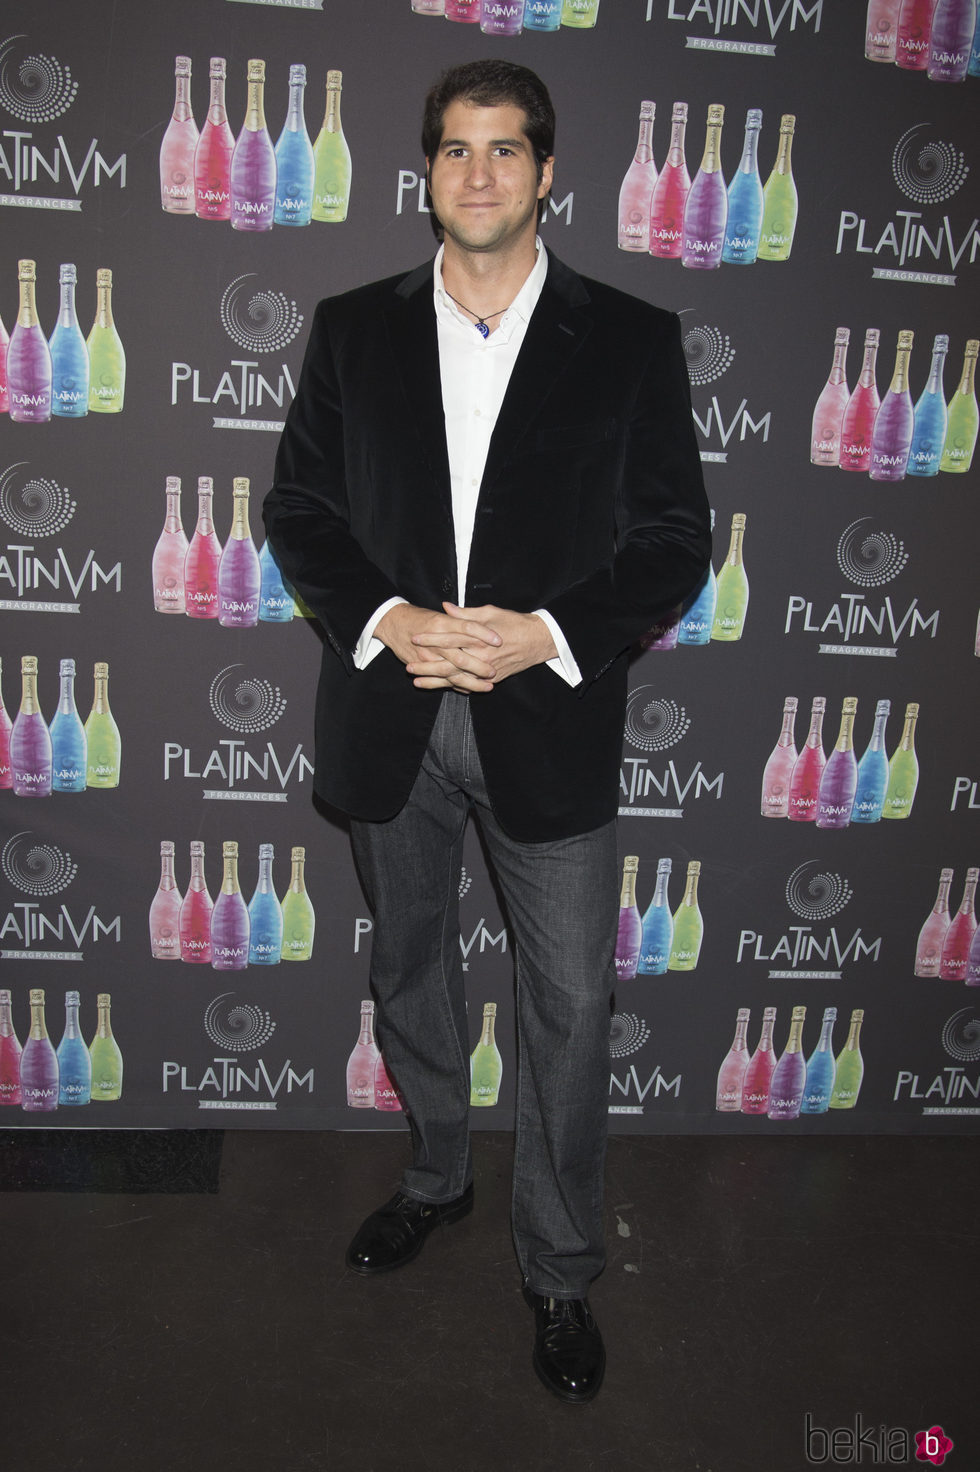 Julián Contreras acude a la Presentación de las bebidas con fragancias Platinum